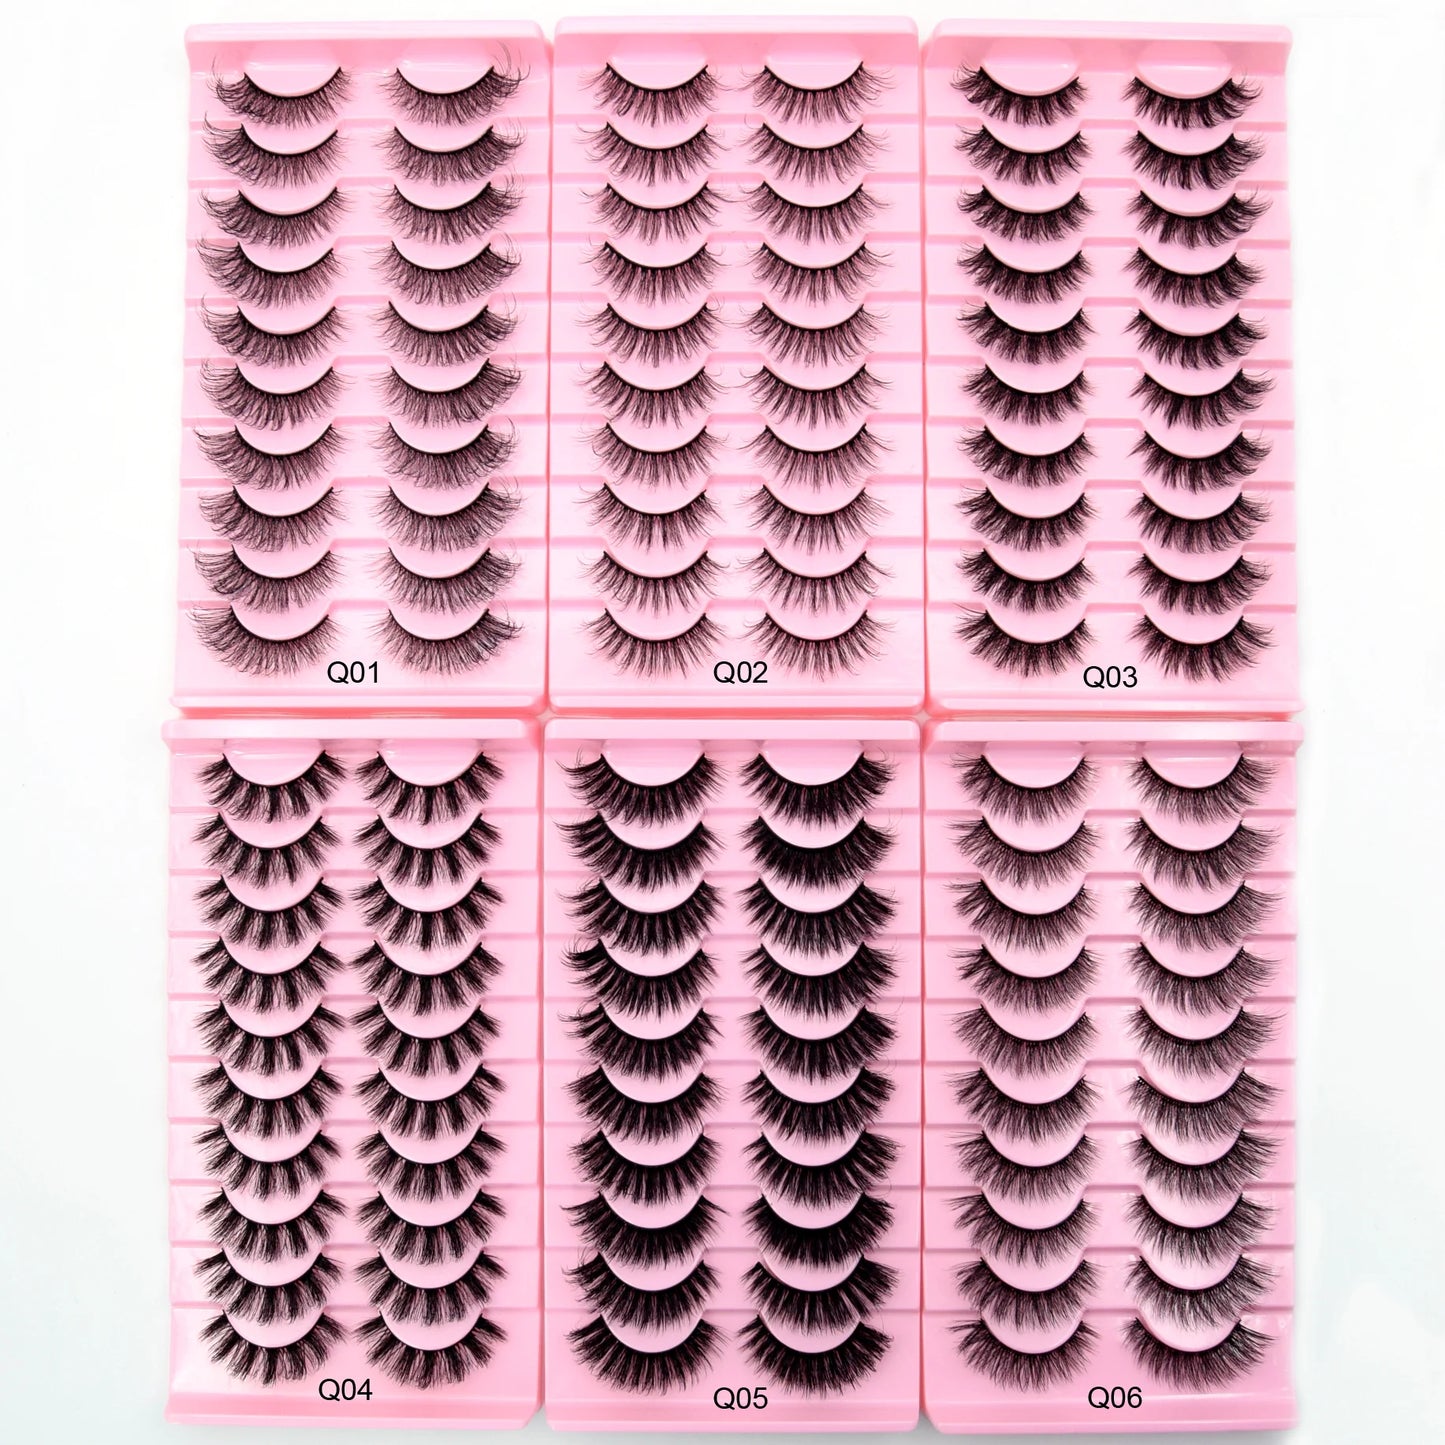 10 Pairs Eyelashes Natural Long 3D Mink Lashes